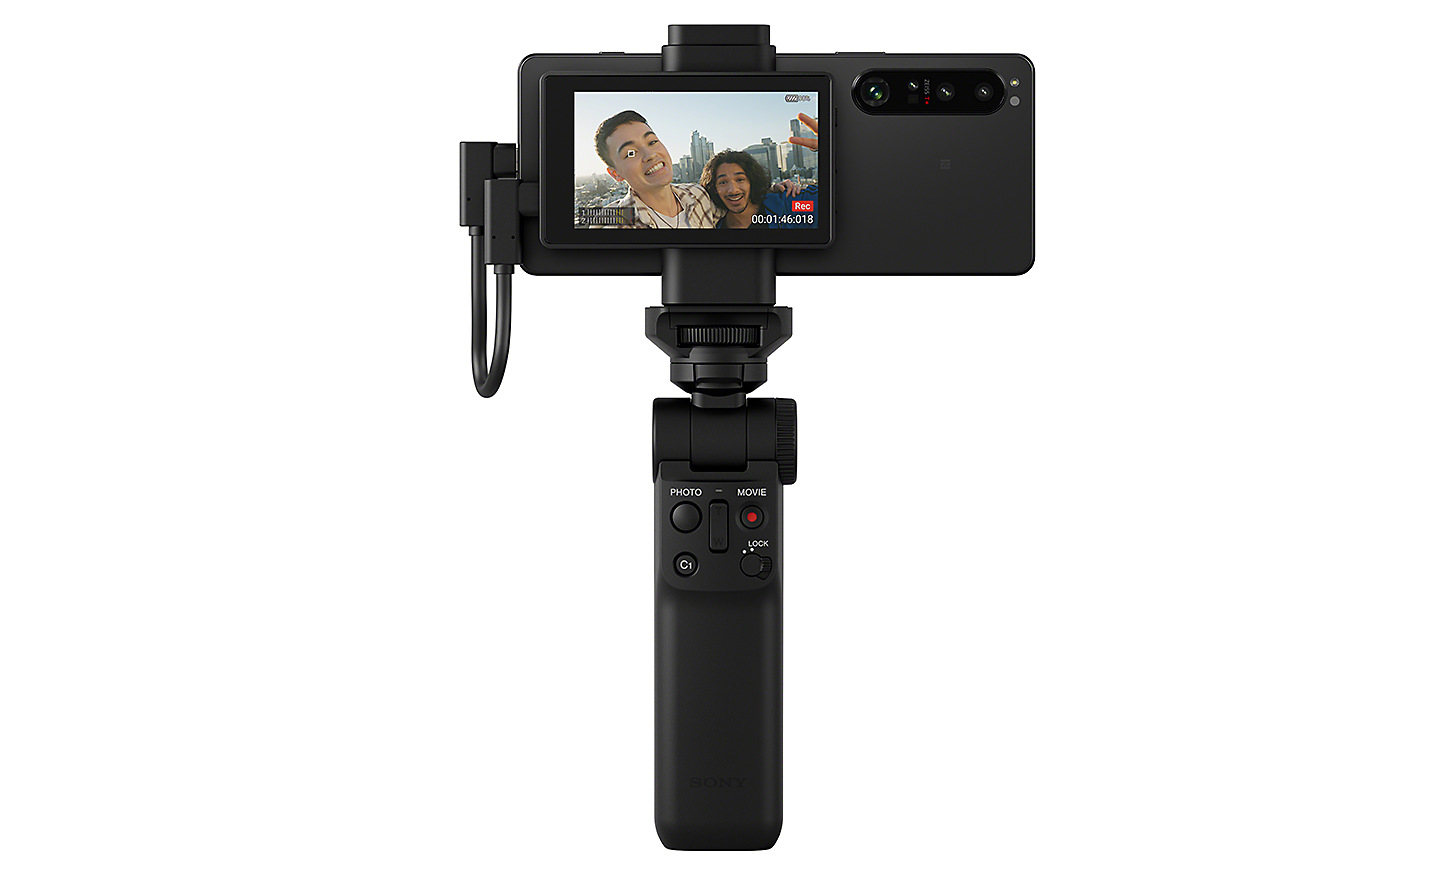 Xperia 1 IV yhdistettynä vlog-näyttöön ja Bluetooth-kuvauskahvaan